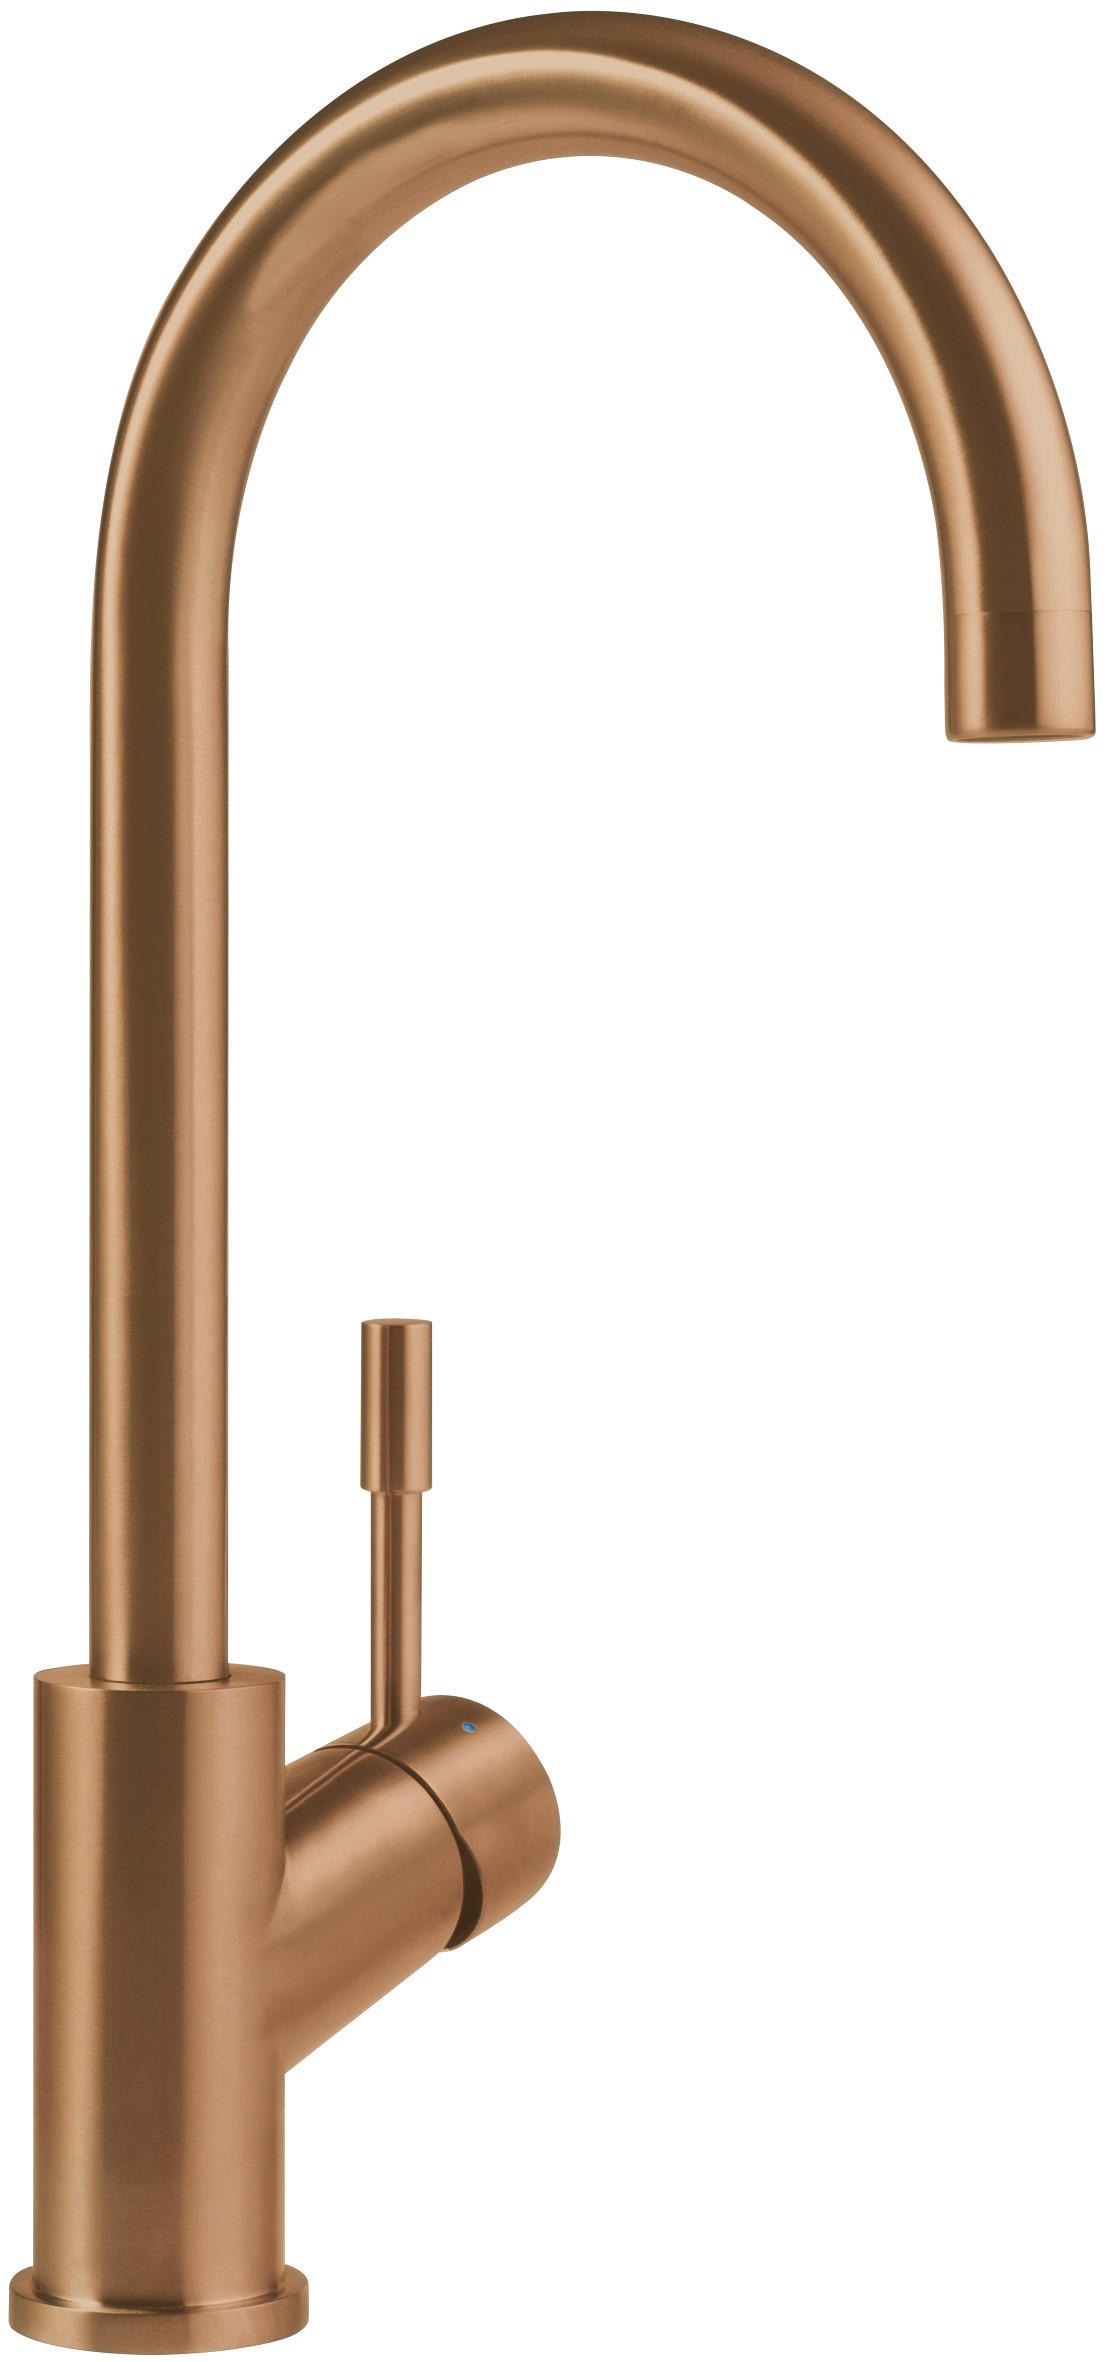 KÜCHENARMATUR 92530004  - Bronzefarben, Basics, Metall (4,5/40,5/21,5cm) - Villeroy & Boch